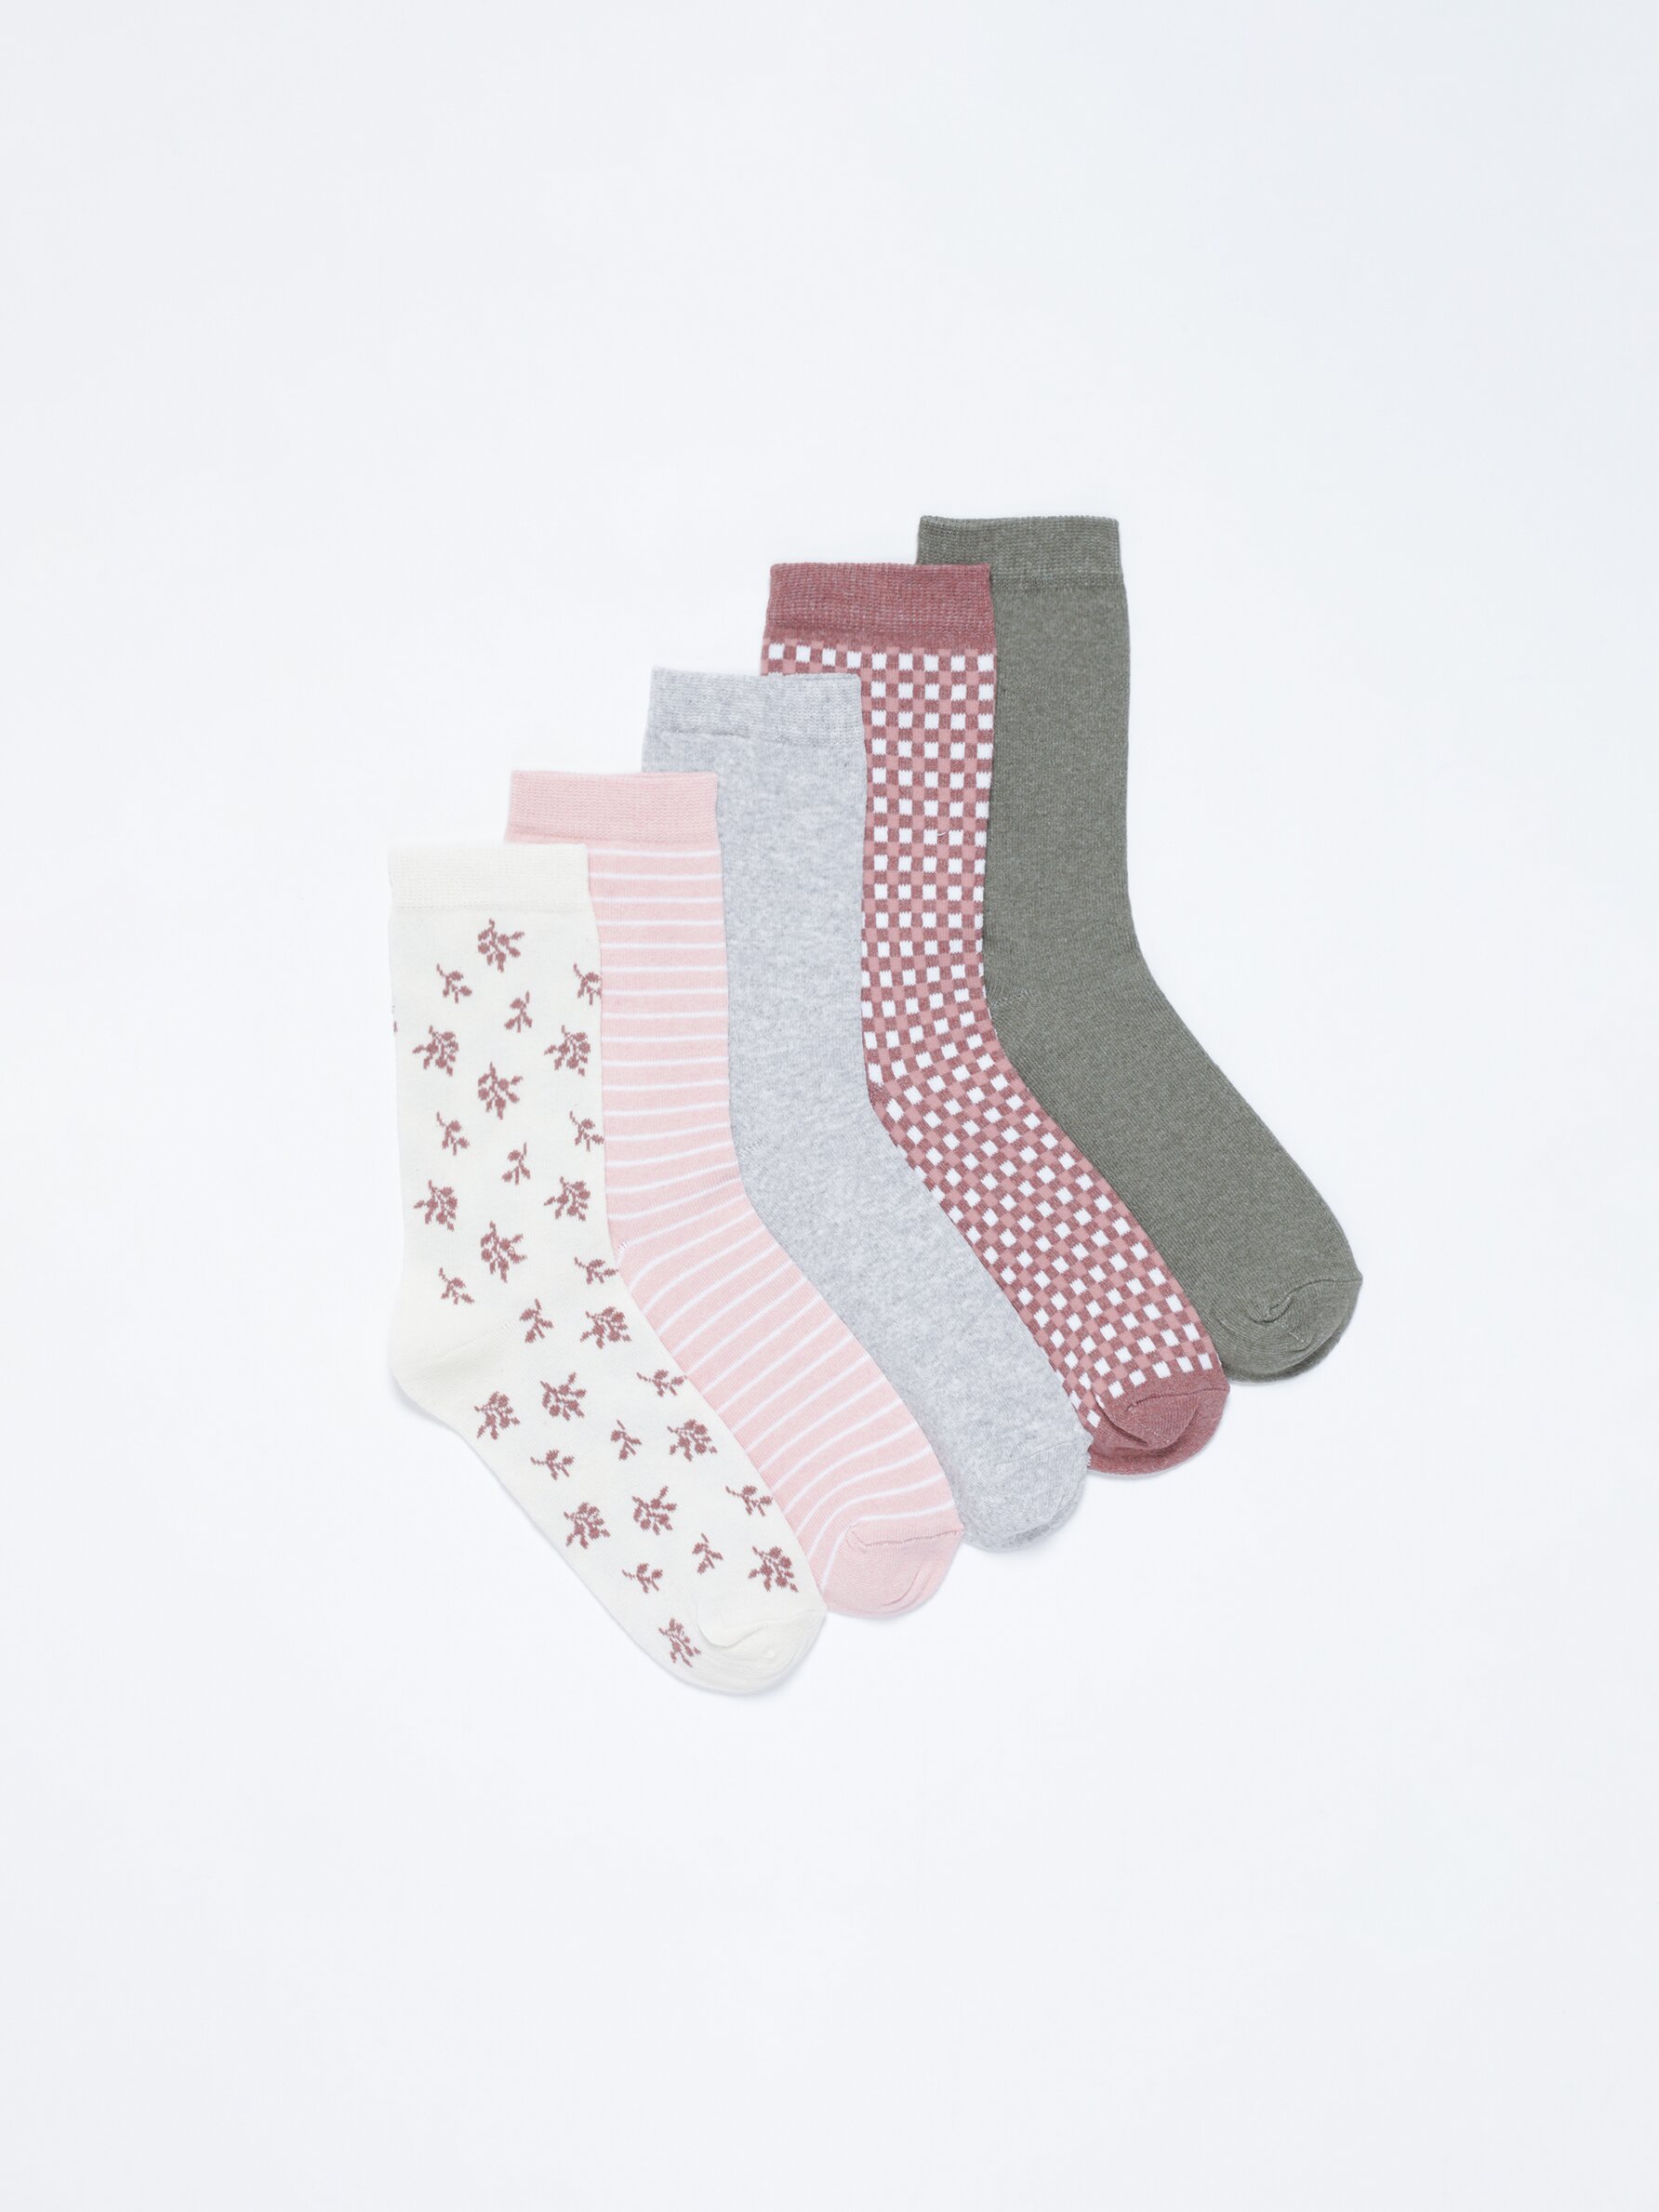 Pack of 5 pairs of contrast socks - Socks - Underwear - CLOTHING - Woman -  | Lefties Turkey